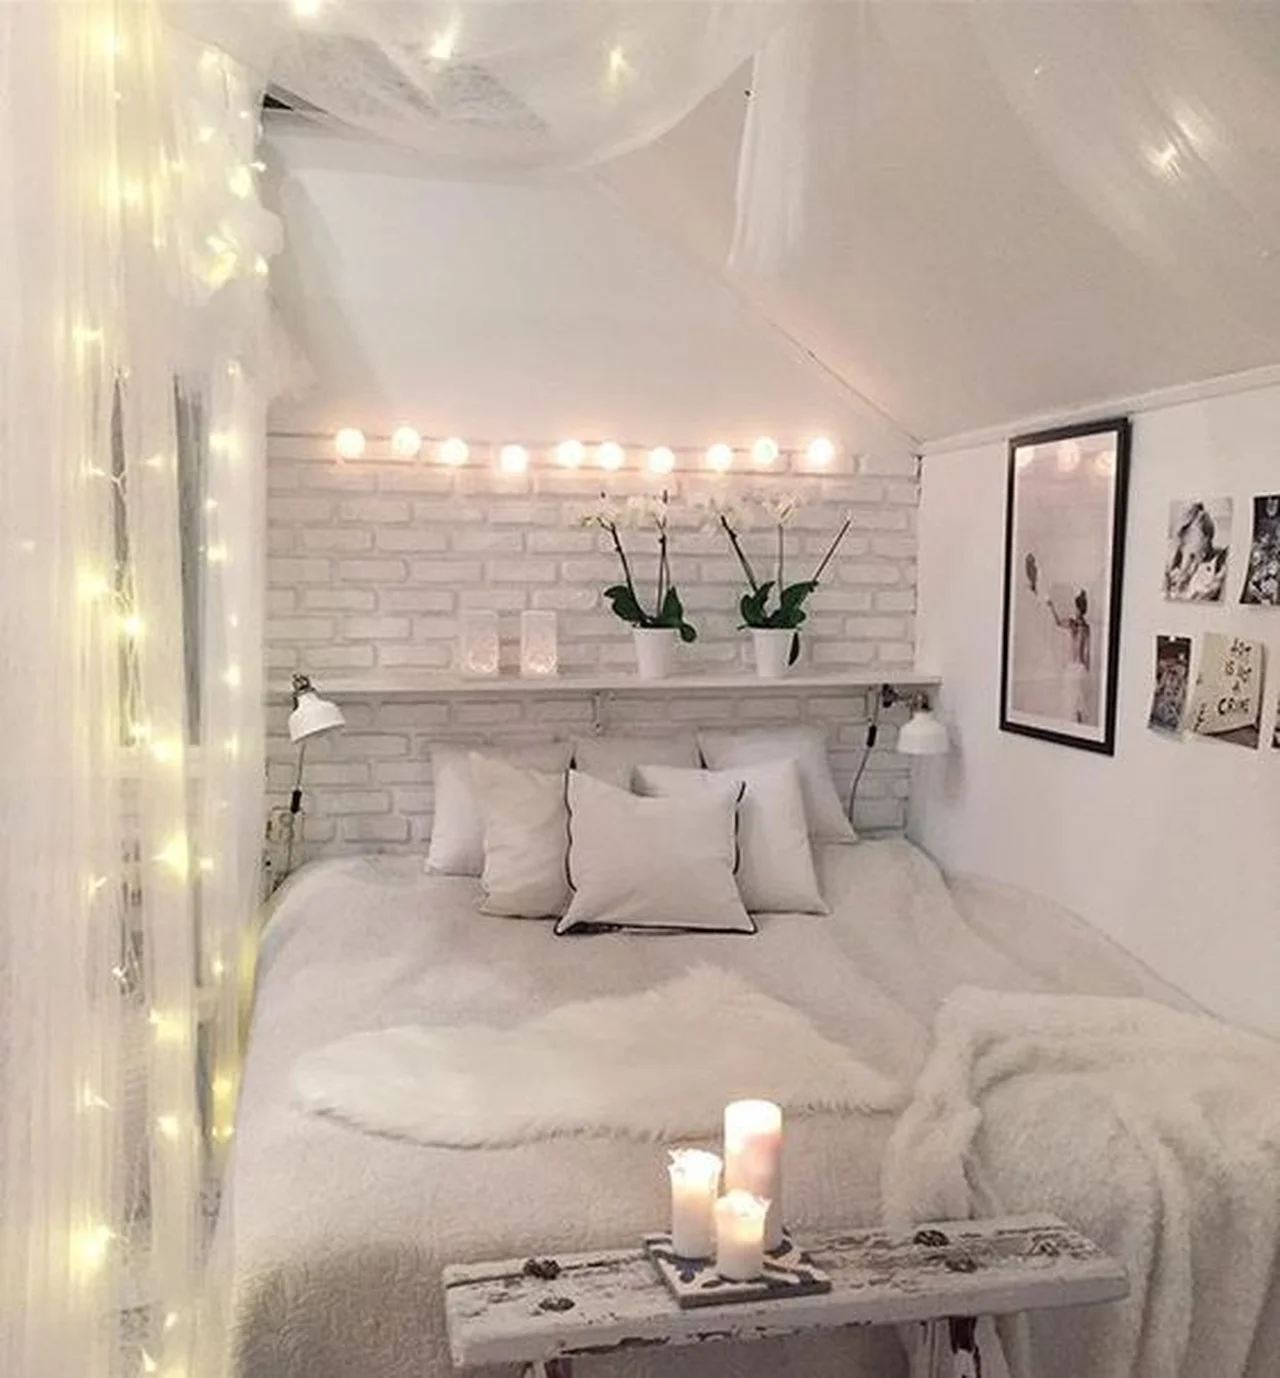 Sypialnia w bieli